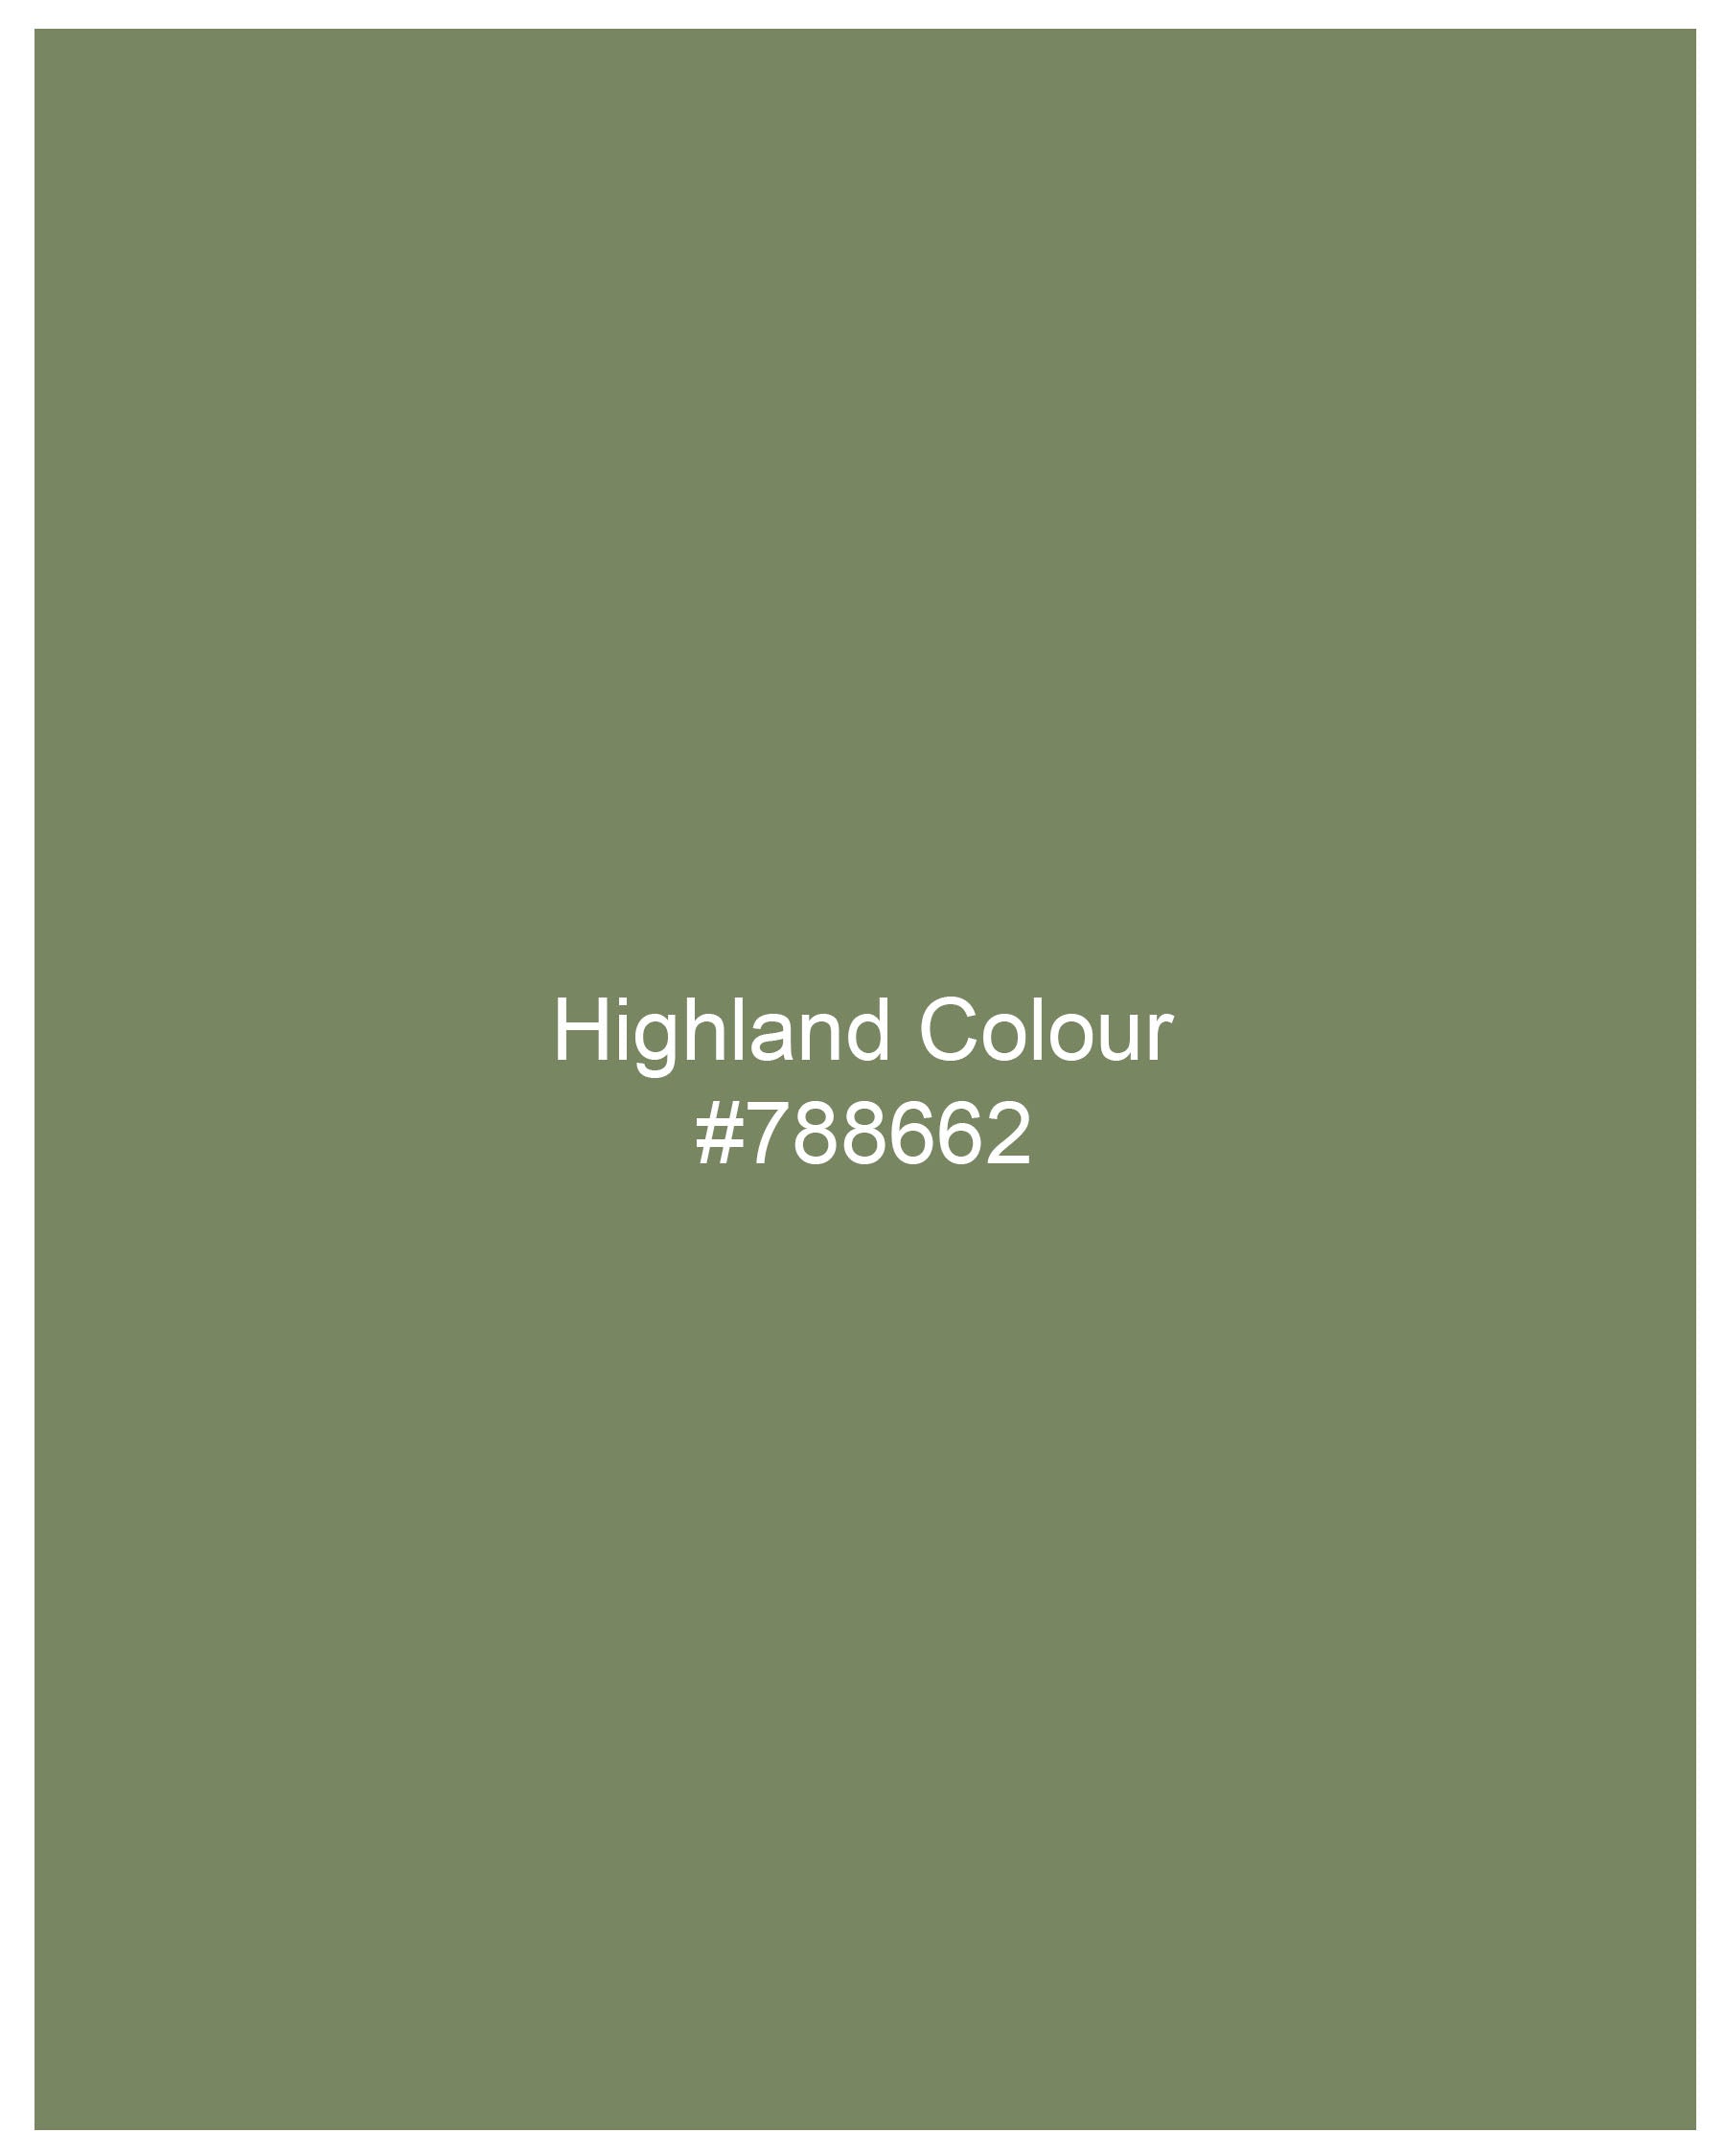 Highland Green Luxurious Linen Shirt 7960-M-38, 7960-M-H-38, 7960-M-39, 7960-M-H-39, 7960-M-40, 7960-M-H-40, 7960-M-42, 7960-M-H-42, 7960-M-44, 7960-M-H-44, 7960-M-46, 7960-M-H-46, 7960-M-48, 7960-M-H-48, 7960-M-50, 7960-M-H-50, 7960-M-52, 7960-M-H-52